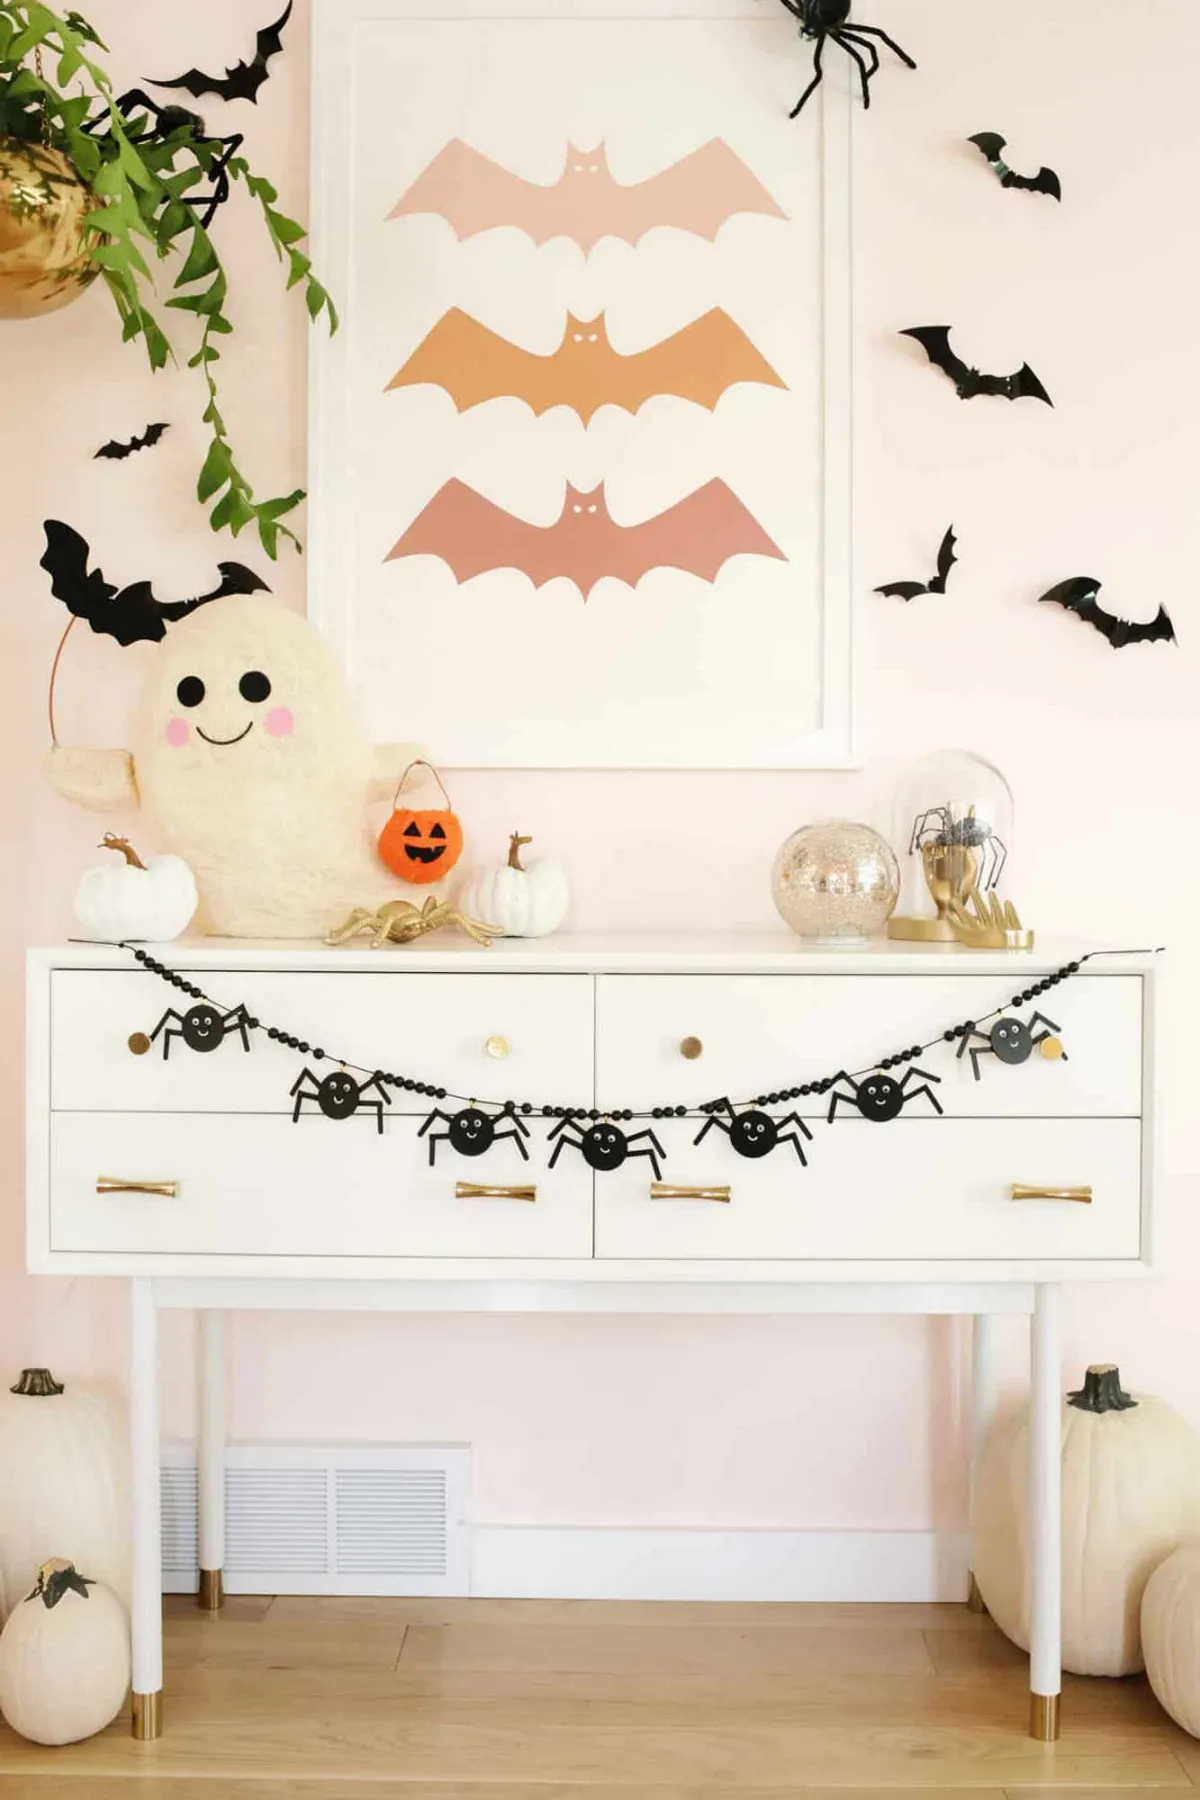 guirlande d halloween en bois araignees noires commode cadre poster chauve souris papier